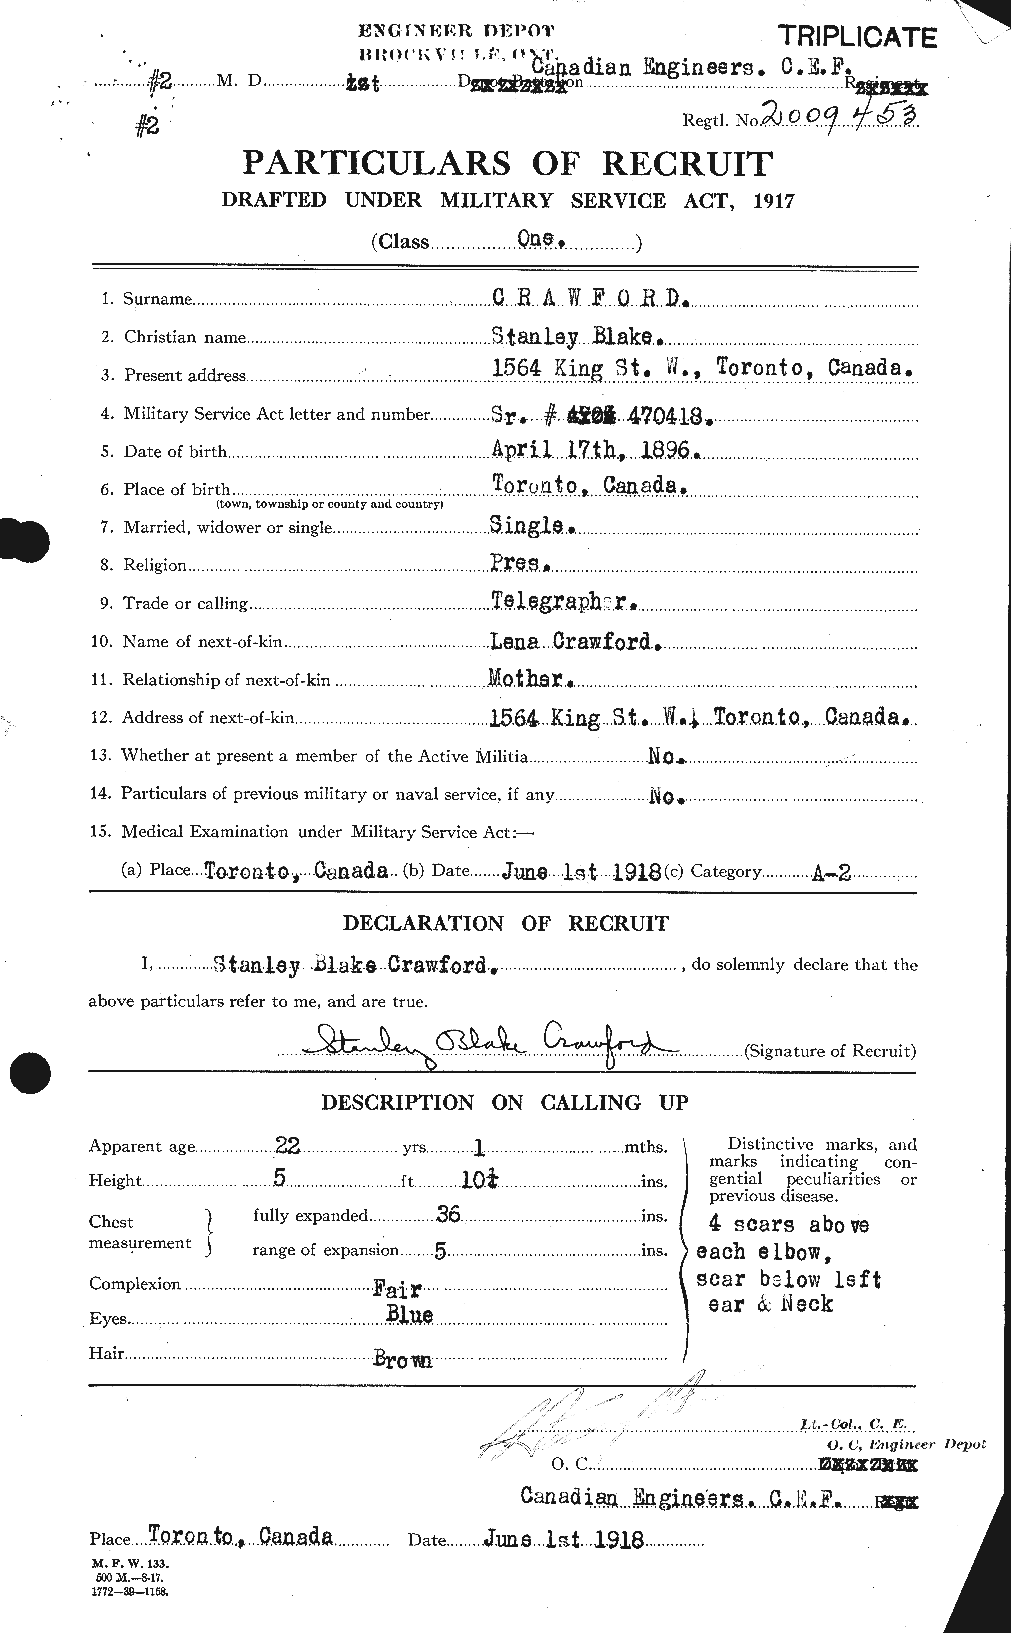 Dossiers du Personnel de la Première Guerre mondiale - CEC 061370a